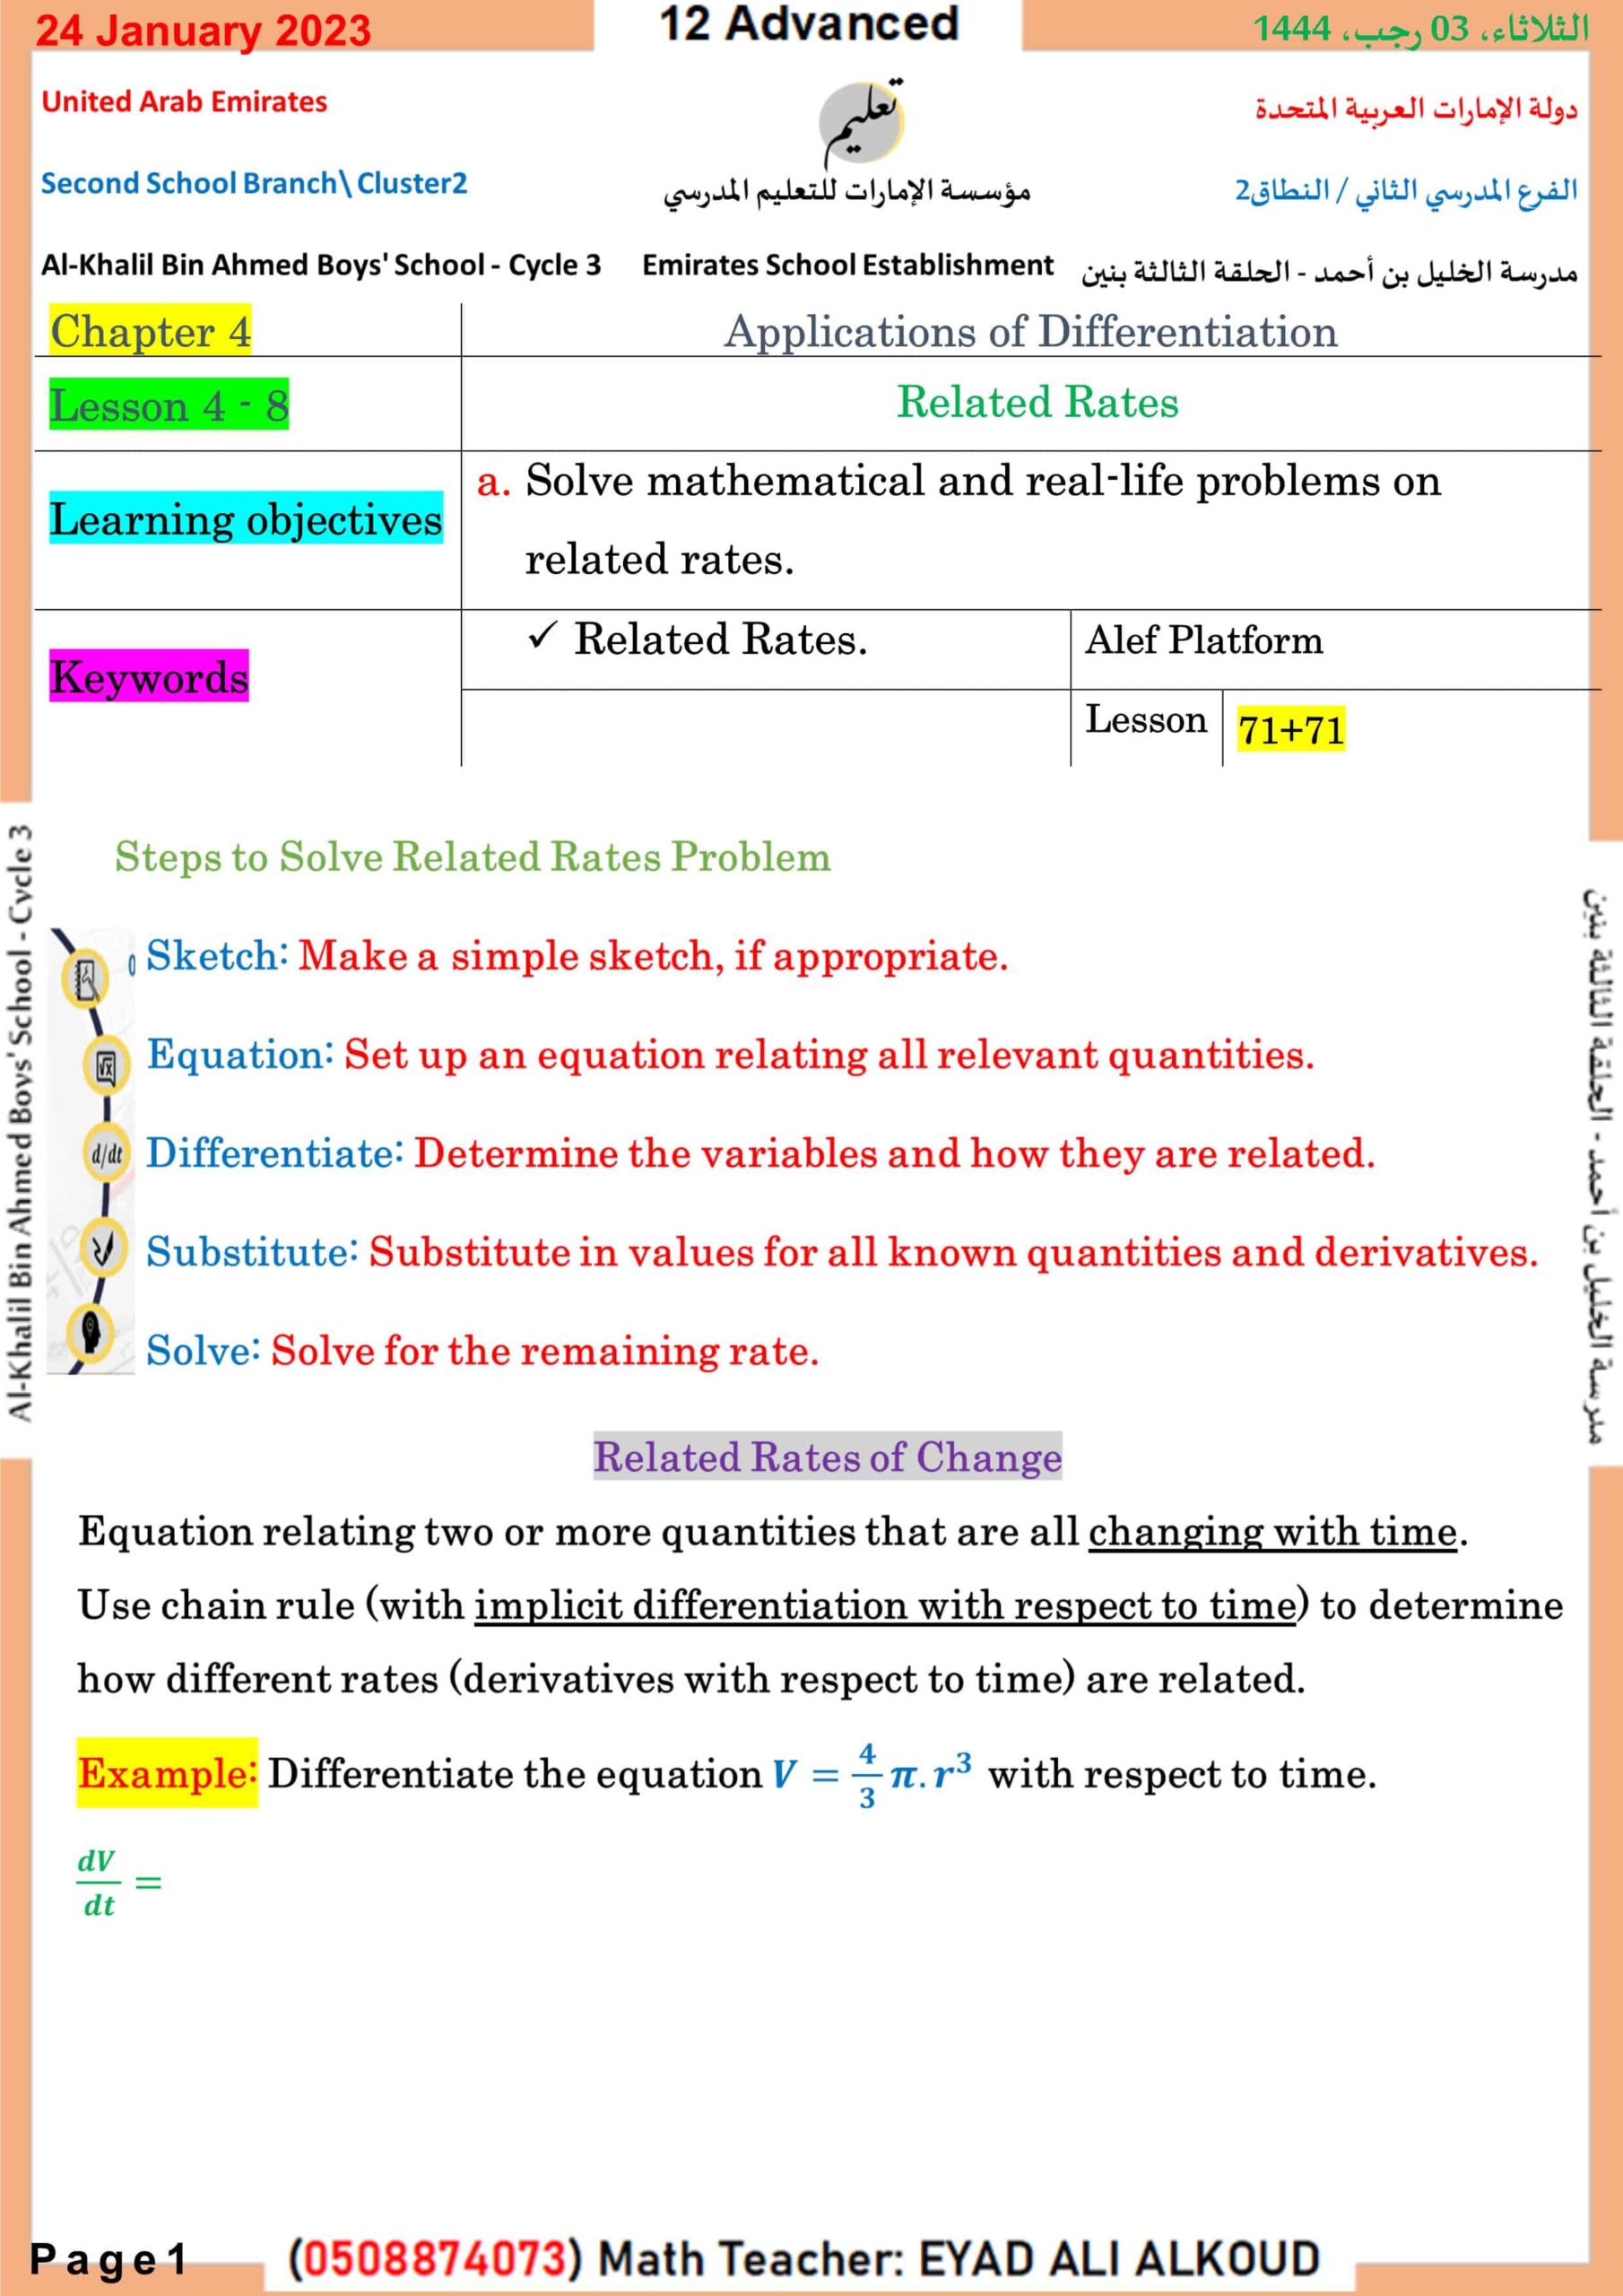 حل درس Related Rates الرياضيات المتكاملة الصف الثاني عشر